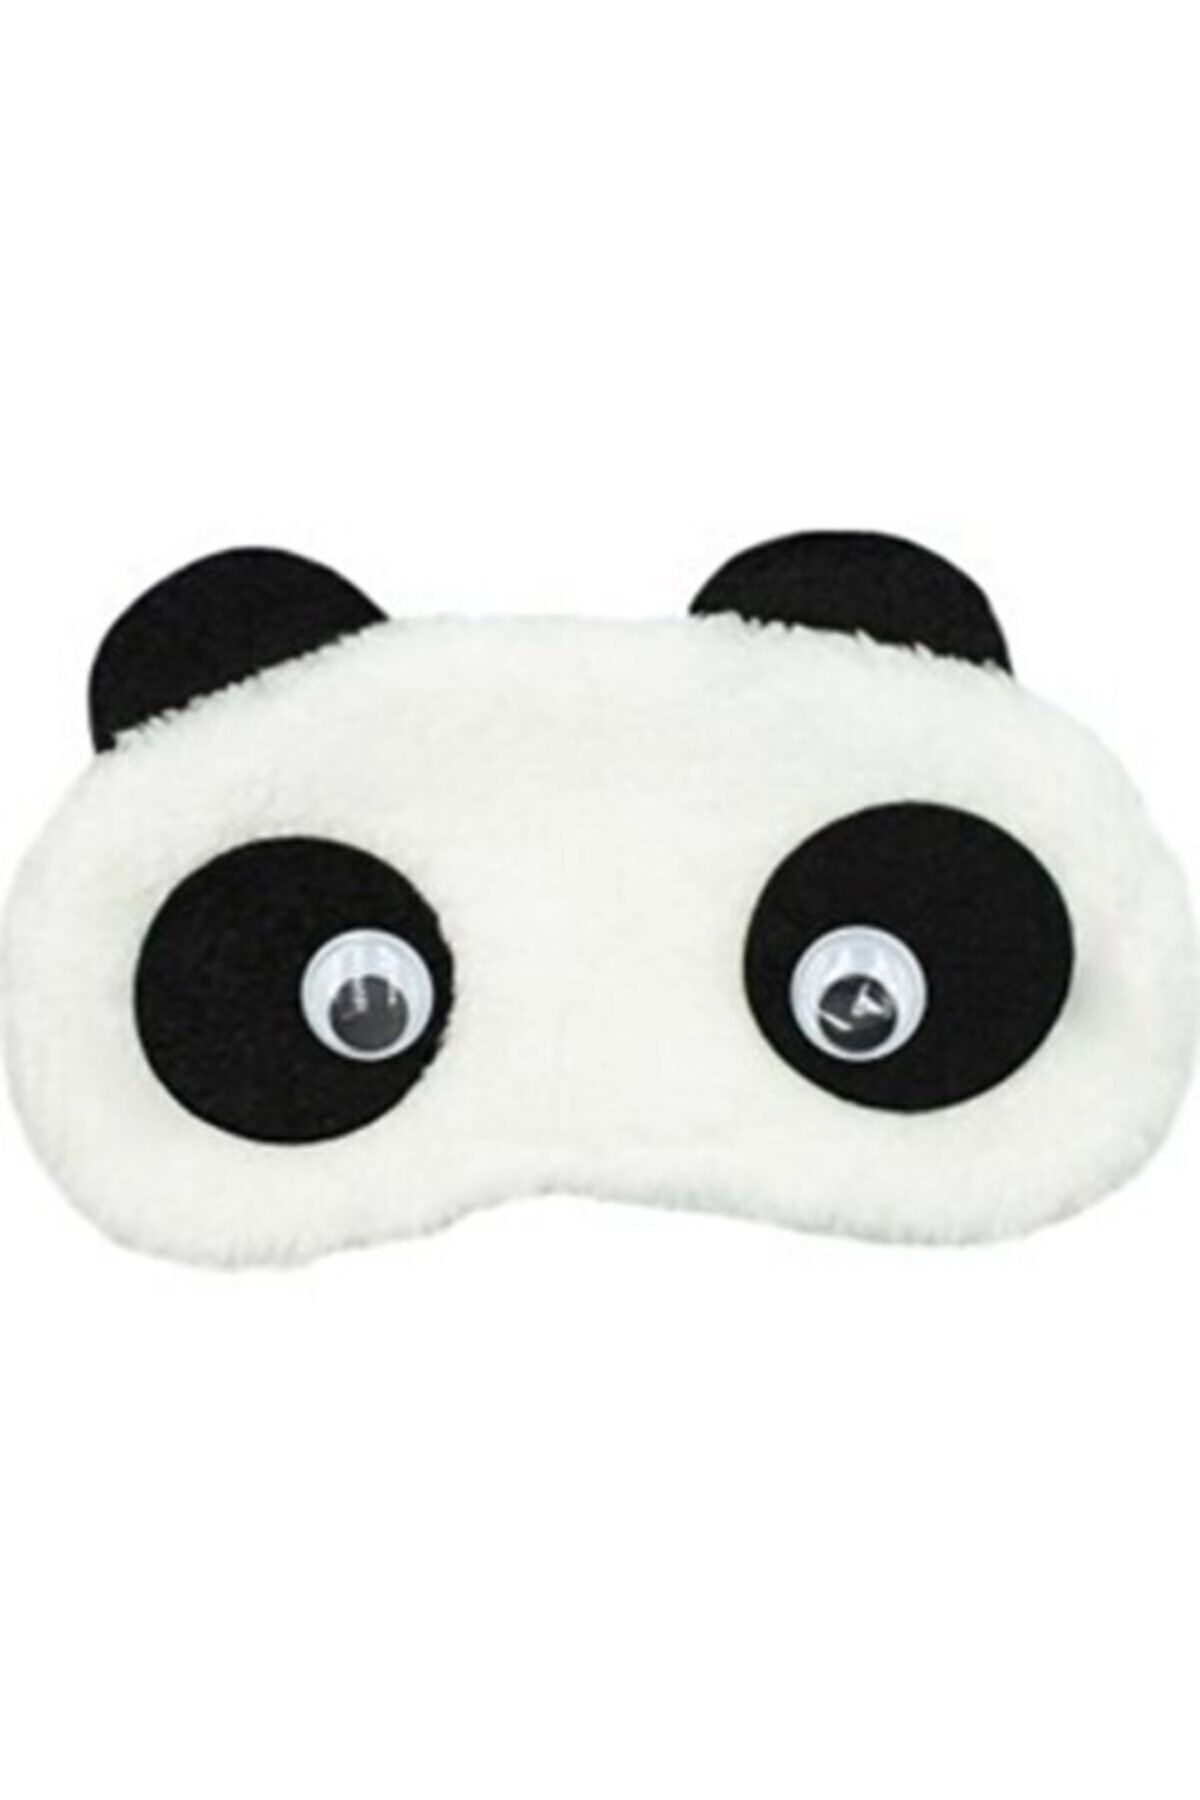 BUĞLEM Peluş Panda Uyku Bandı - Göz Bandı - Hediyelik